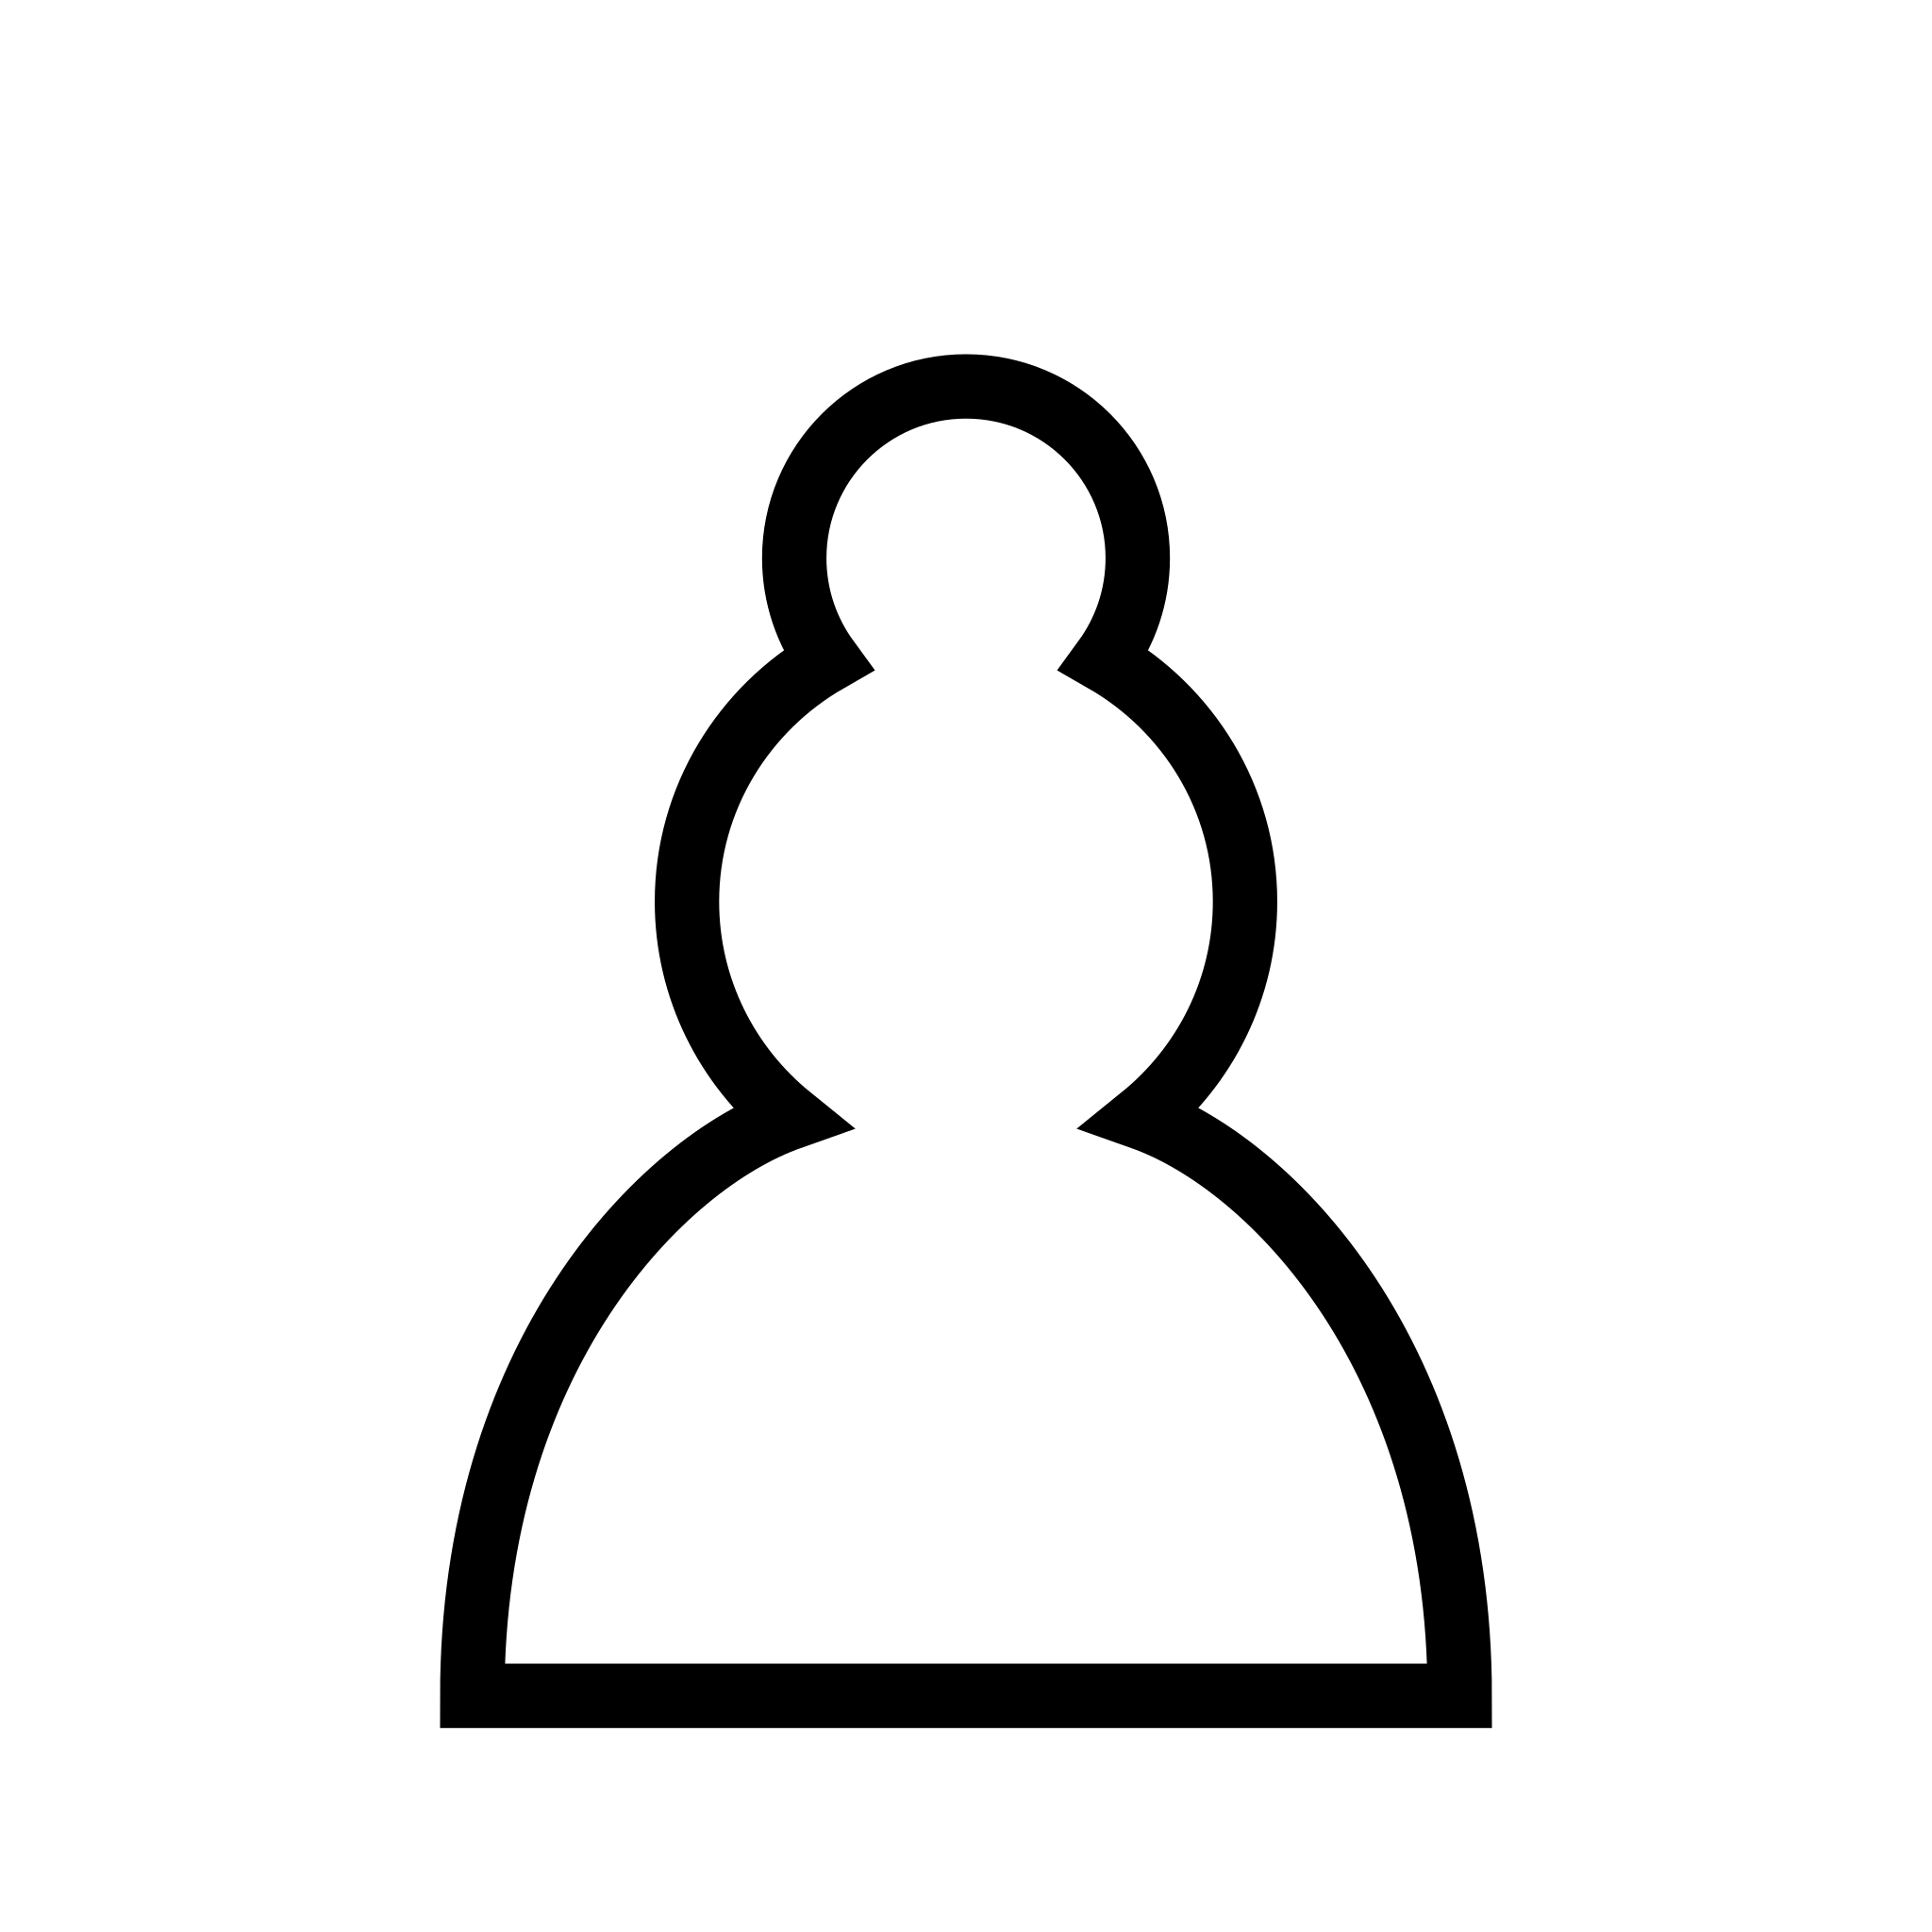 File:LibreLogo Chess board.png - Wikipedia